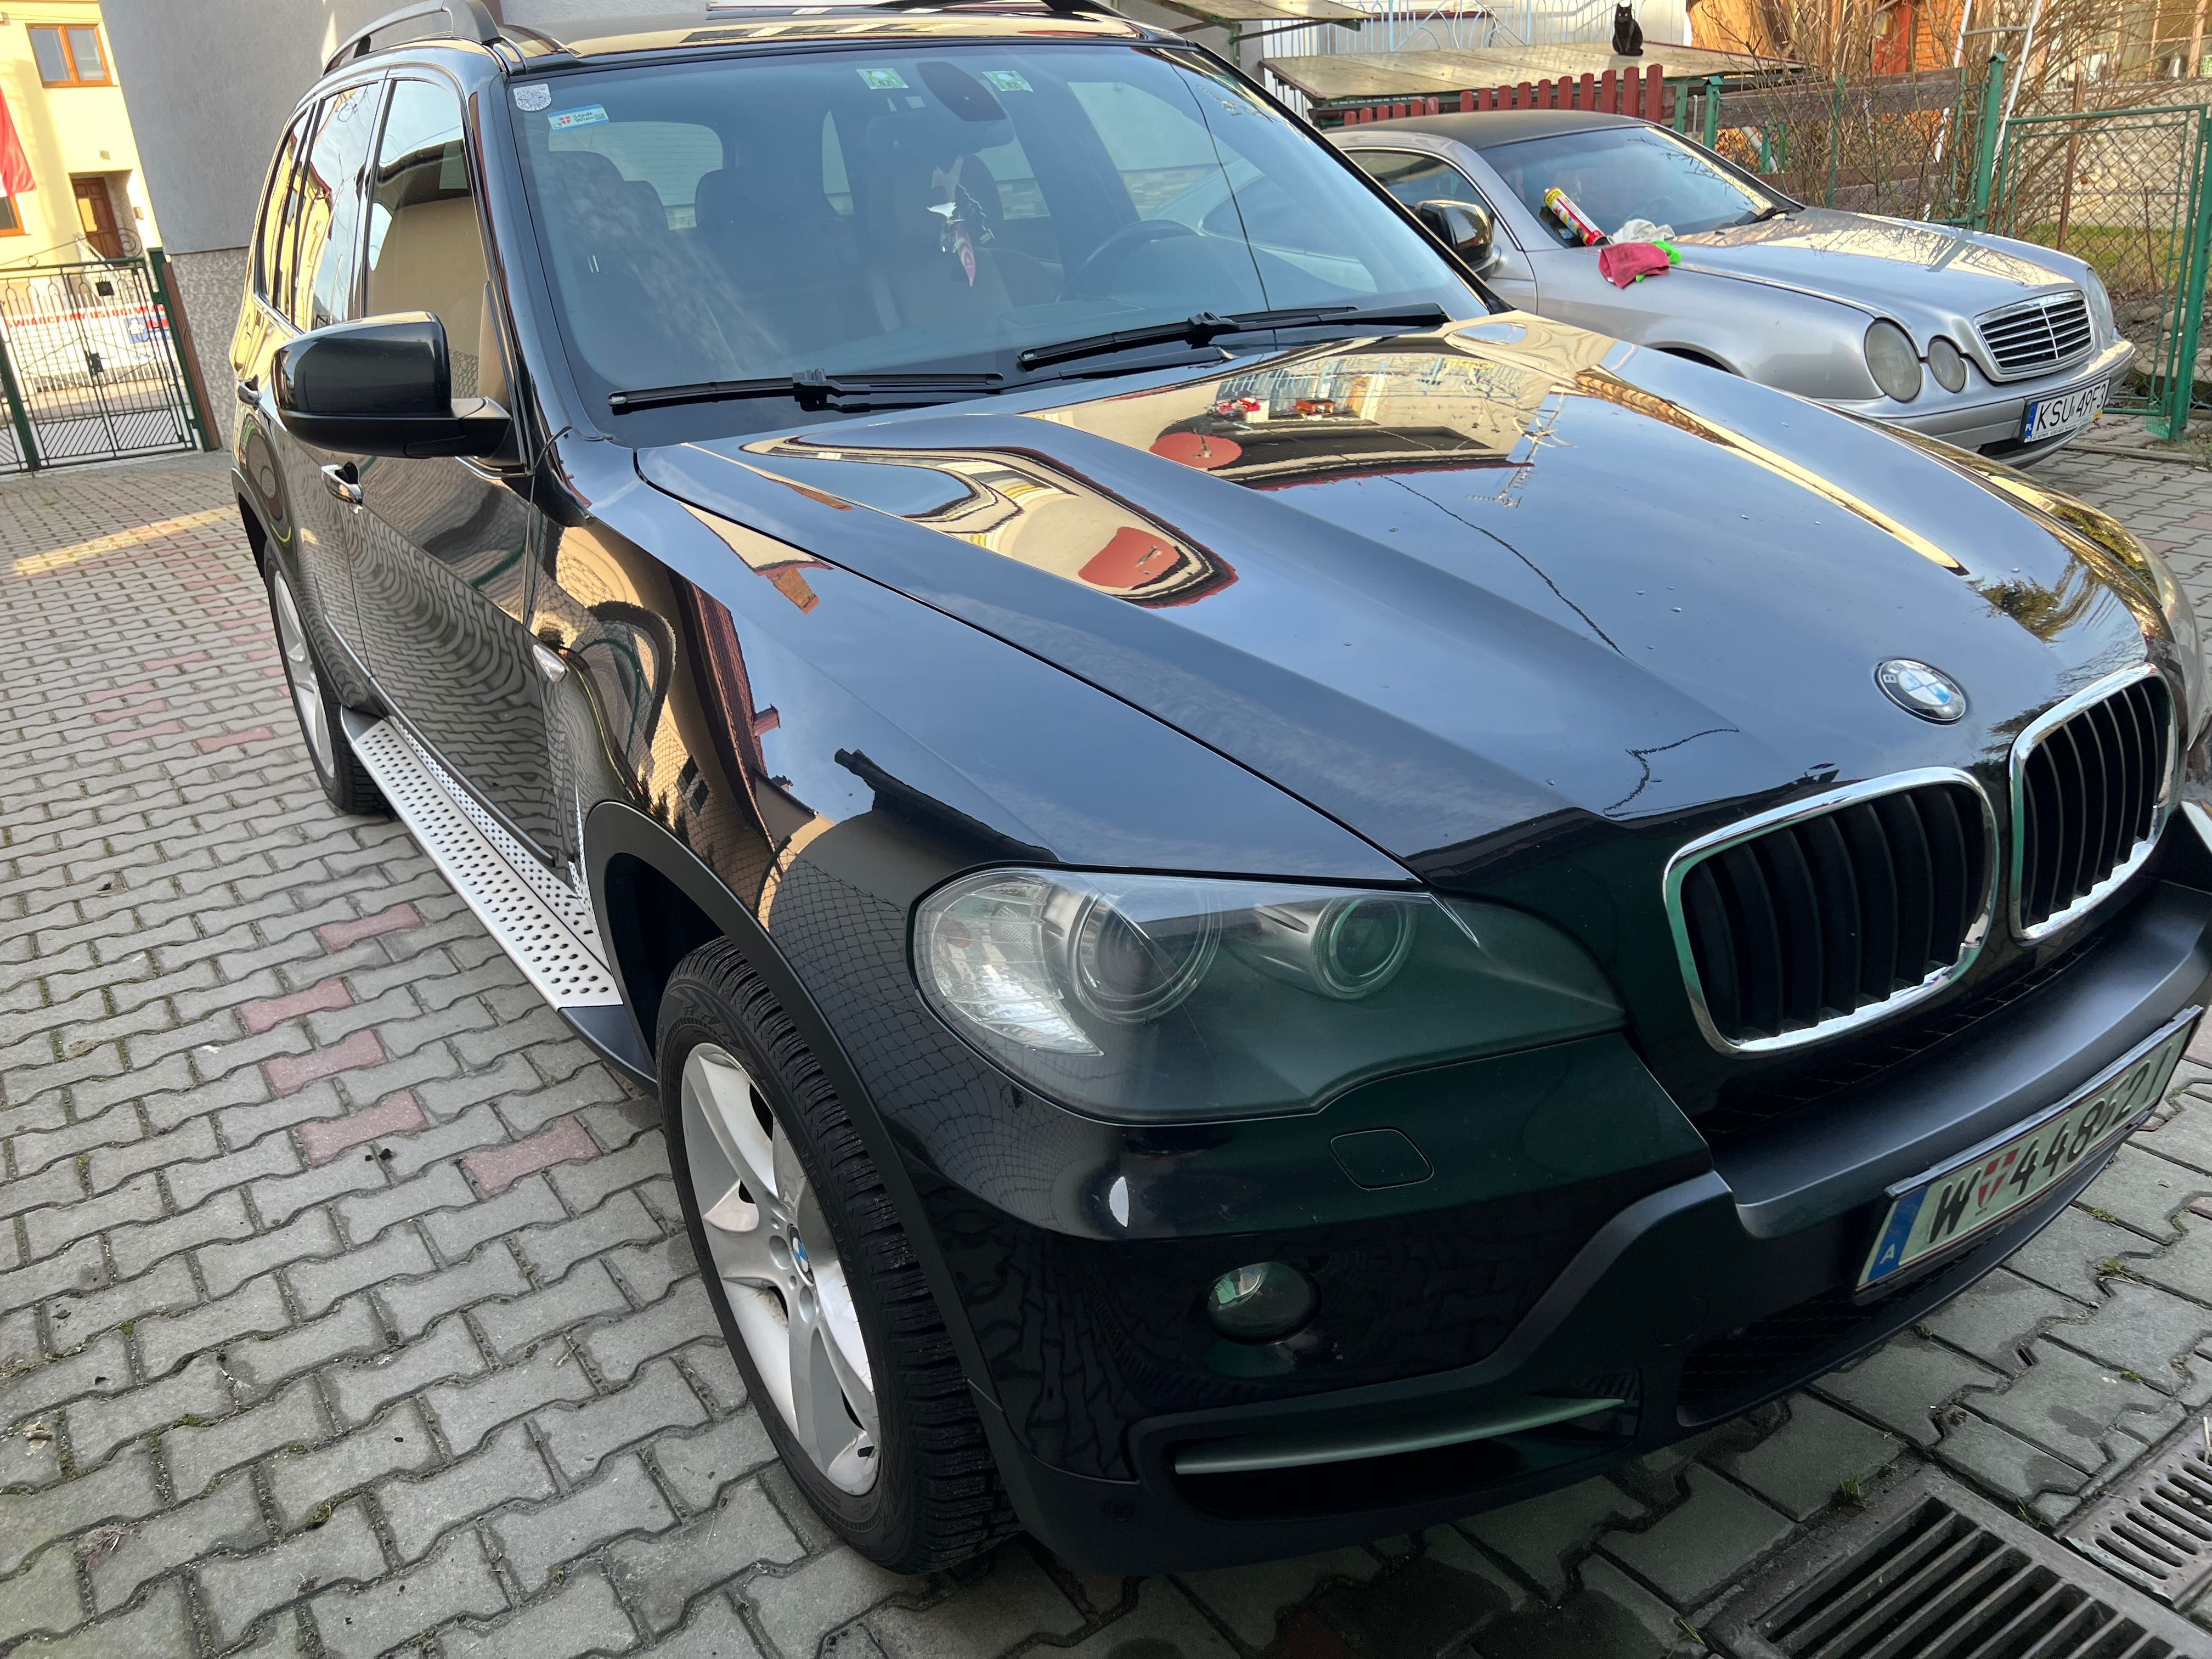 BMW X5 3.0 diesel 235ps